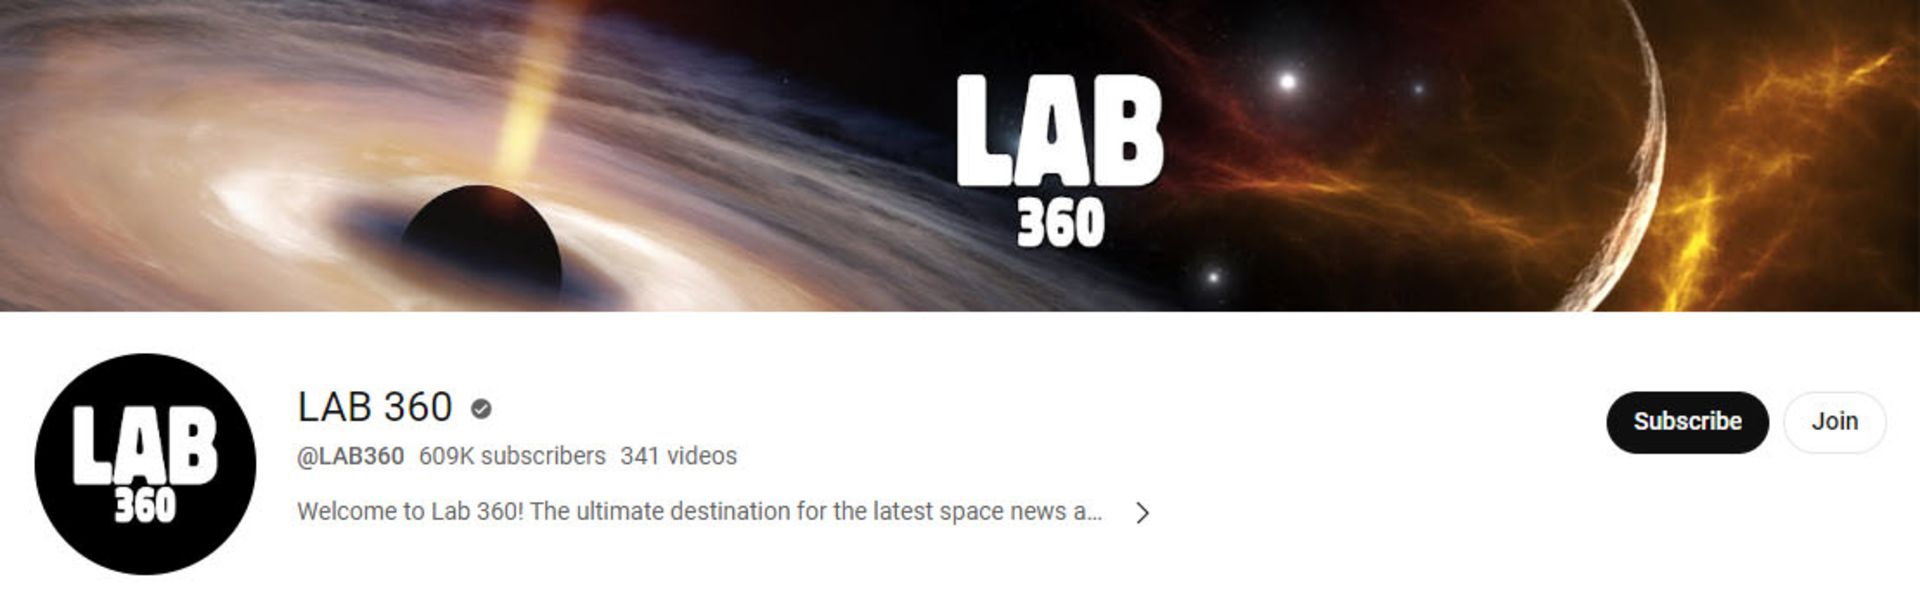 کانال یوتیوب LAB 360